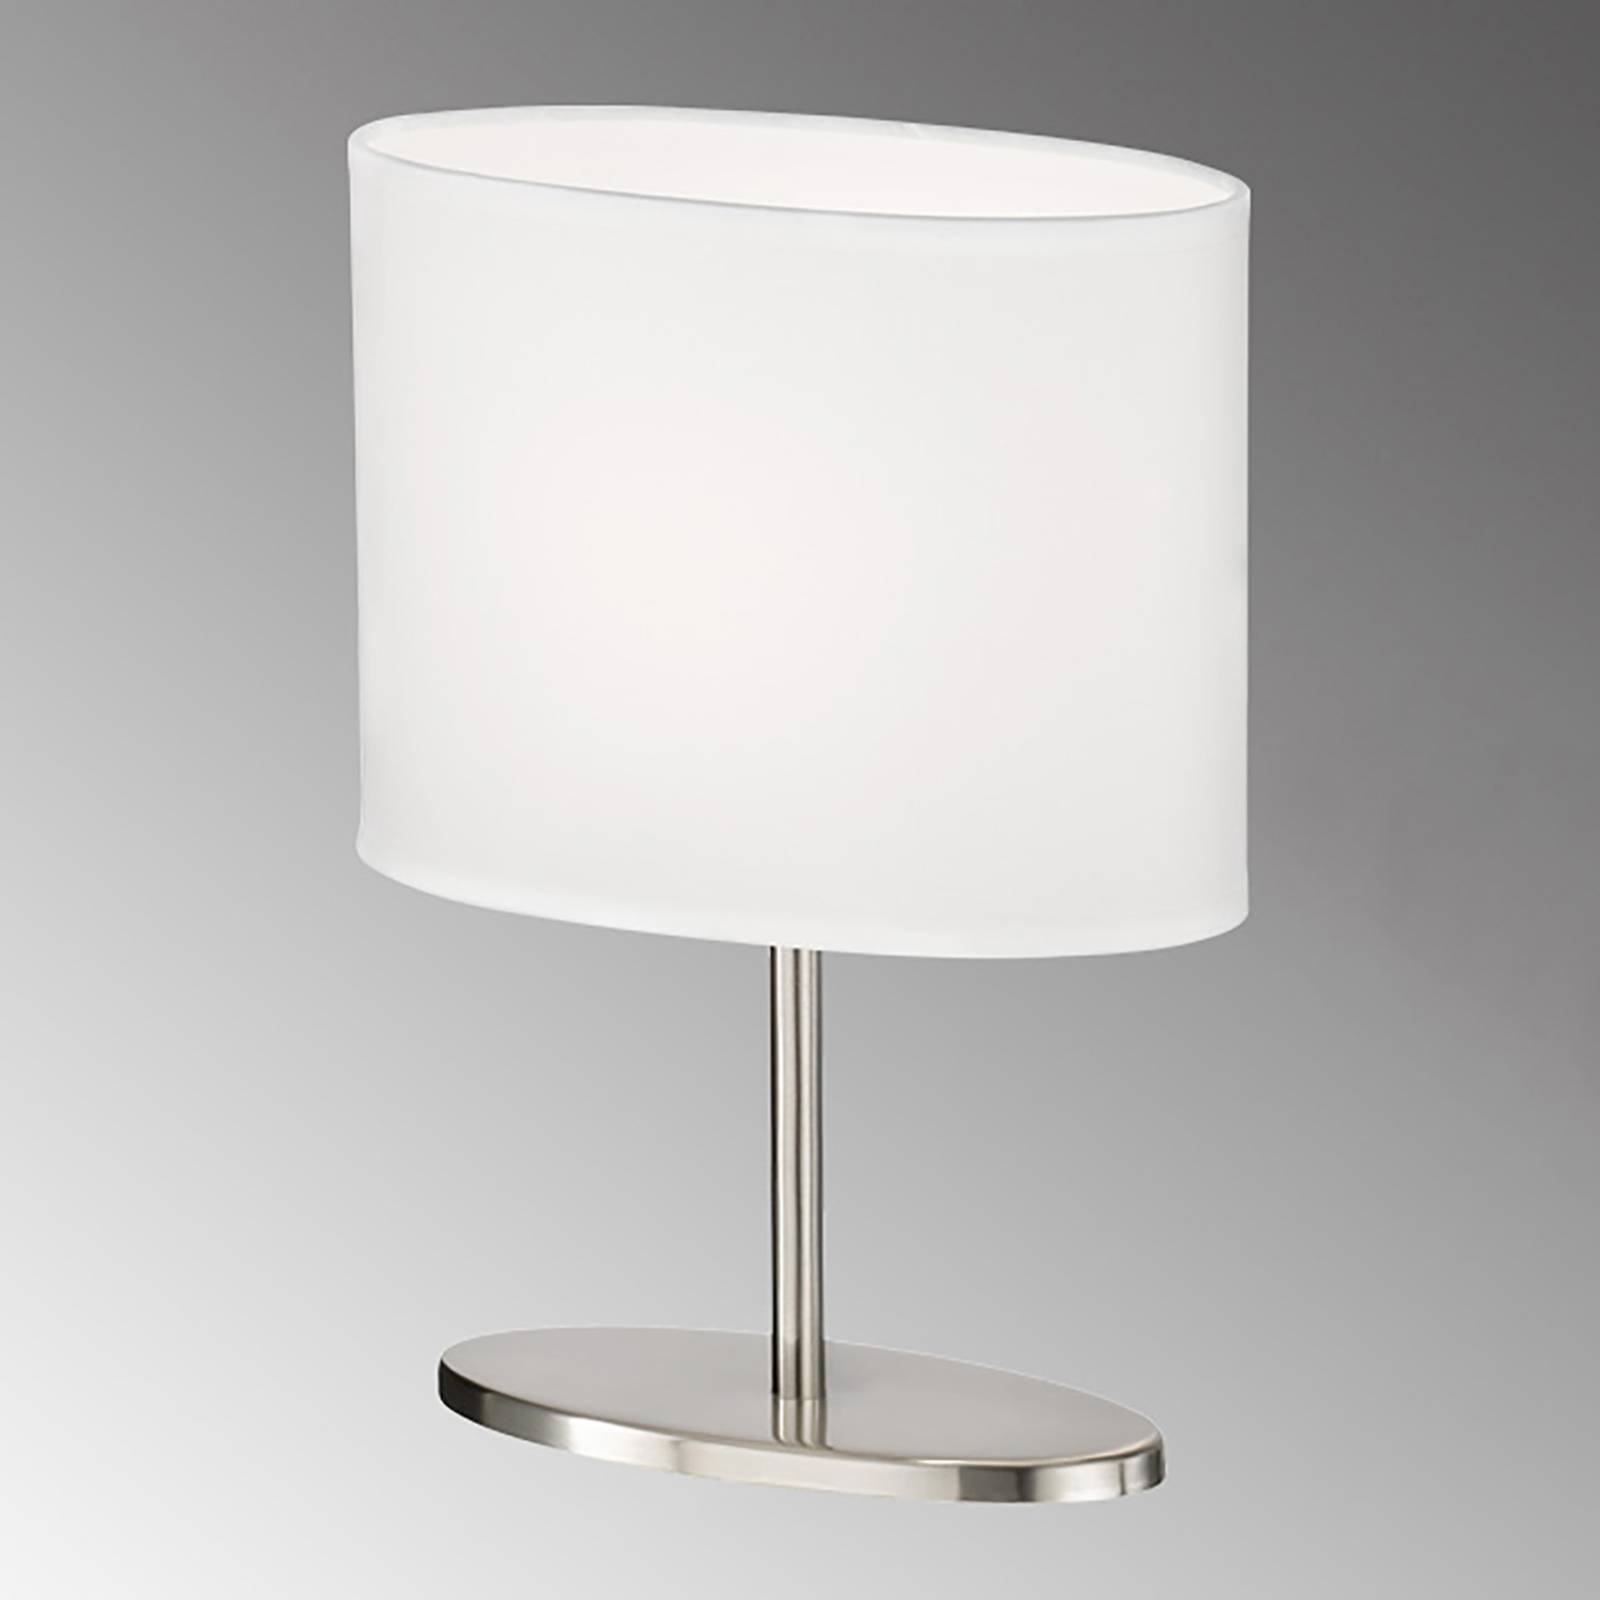 Image of FH Lighting Lampe à poser Momo, abat-jour tissu, nickel/blanc 4052231501081